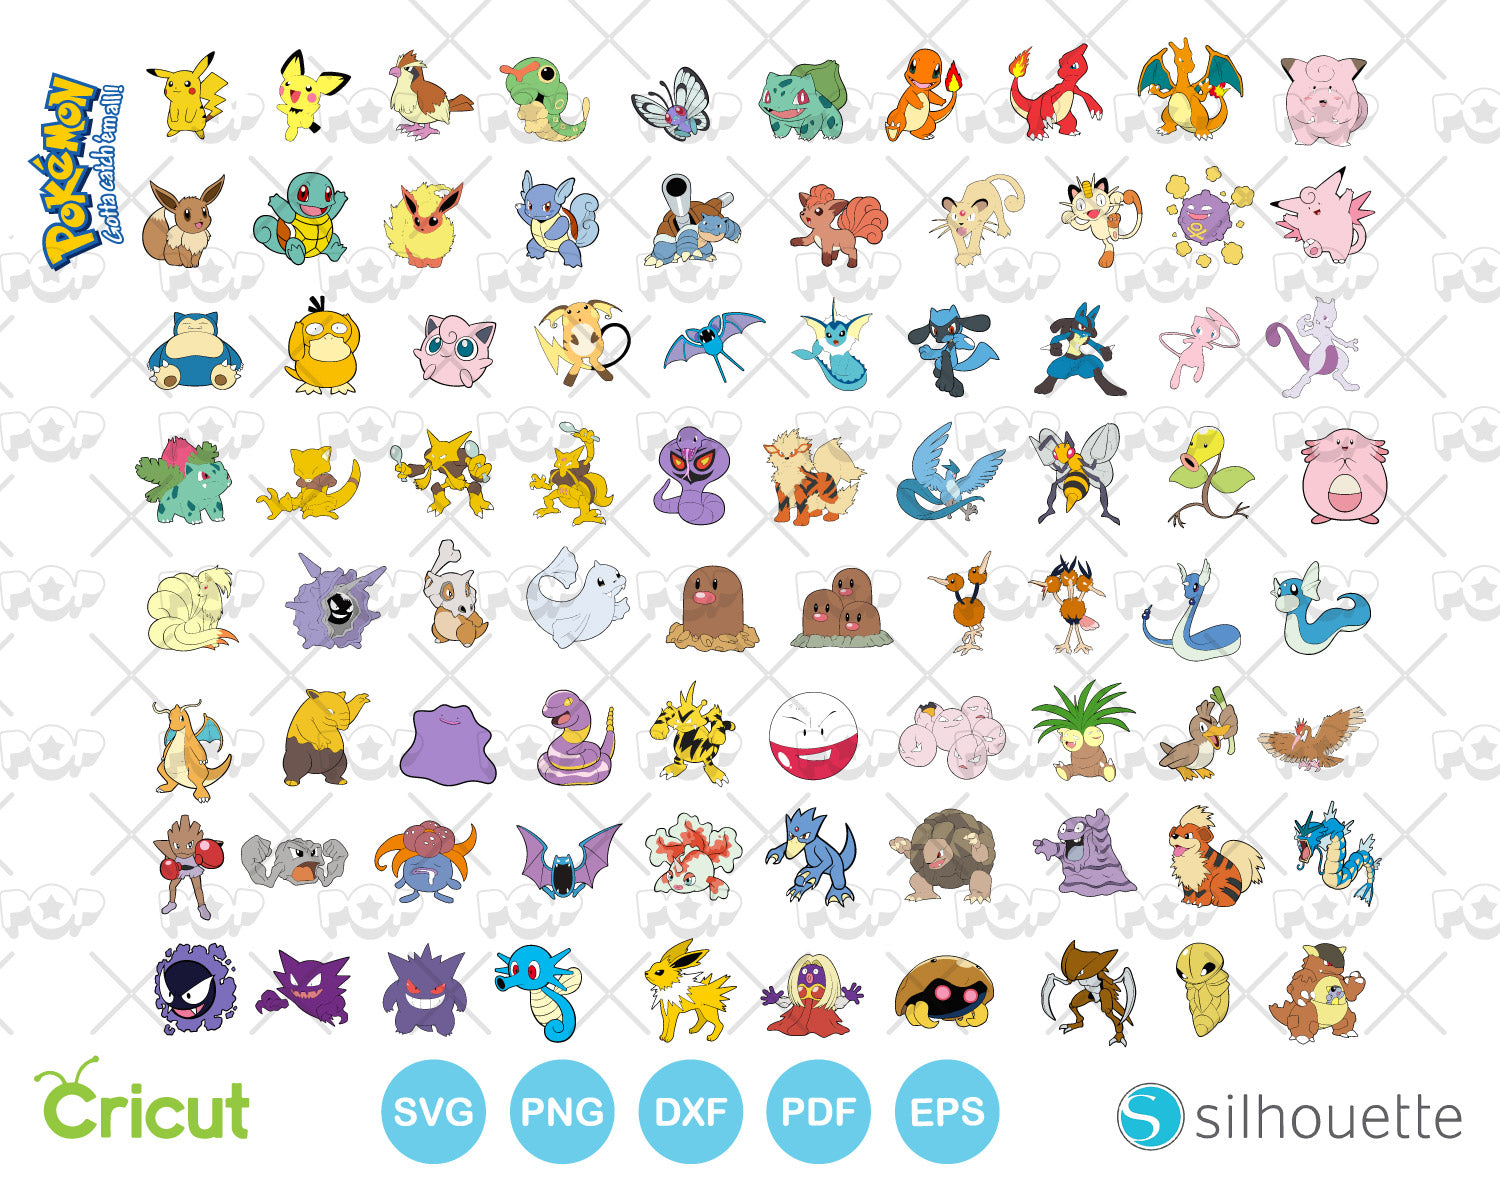 File:Pokémon types (german).svg - Wikimedia Commons